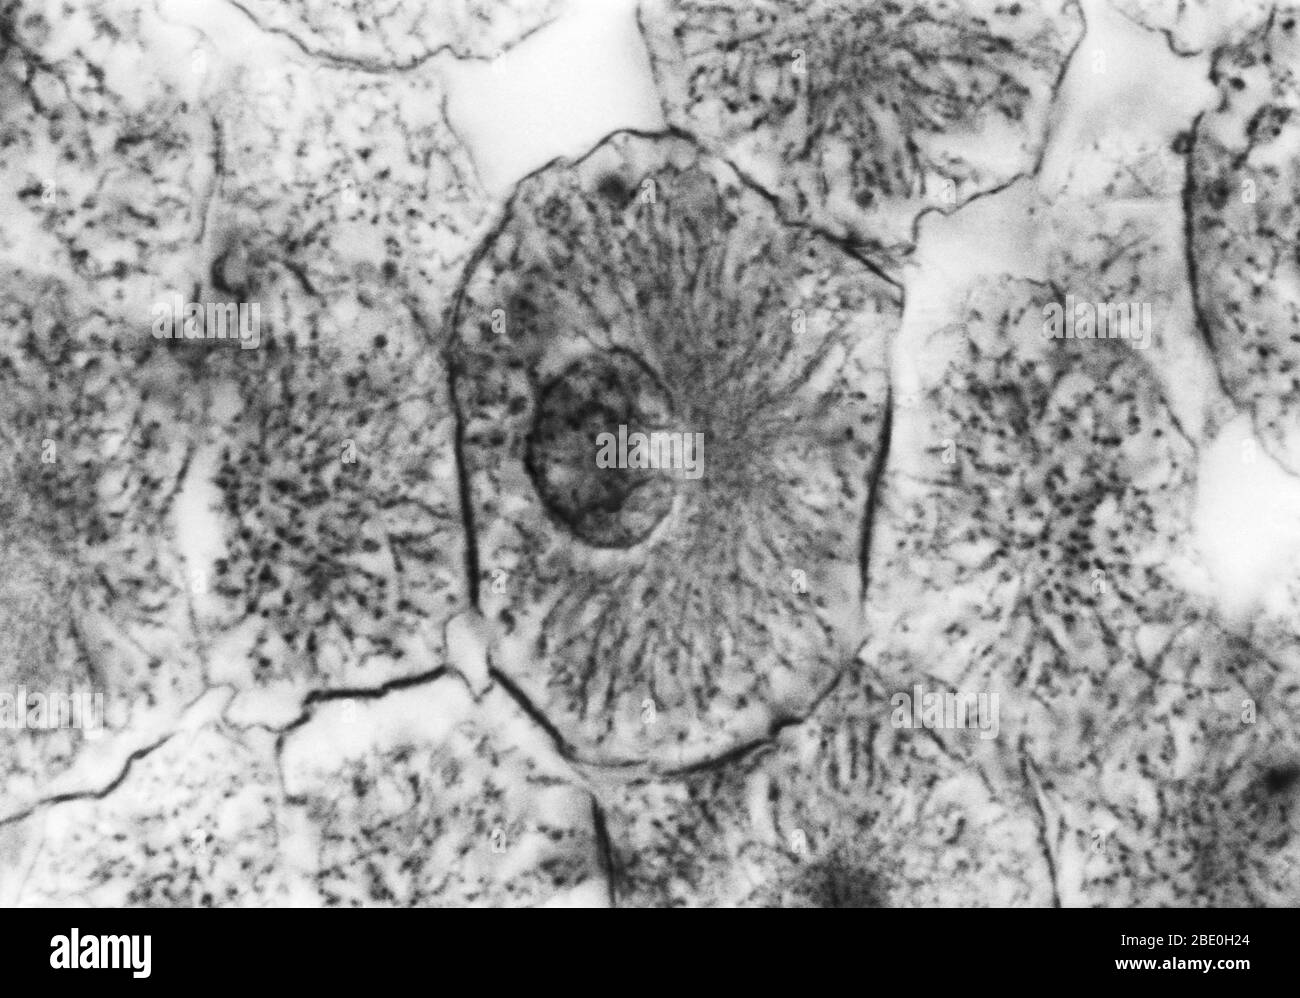 Leichte Mikrograph zeigt Mitose in Weißfischblastula, prophase. Keine Vergrößerung angegeben. Mitose, die übliche Methode der Zellteilung, die typischerweise durch die Auflösung des Chromatins des Zellkerns in eine fädenähnliche Form gekennzeichnet ist, Die zu Chromosomen kondensiert, die sich jeweils längs in zwei Teile aufteilen, wobei jeweils ein Teil jedes Chromosoms in zwei neuen Zellen, die aus der ursprünglichen Zelle hervorgehen, erhalten bleibt. Die vier Hauptphasen der Mitose sind Prophase, Metaphase, Anaphase und Telophase. Blastula, ein tierischer Embryo im Stadium unmittelbar nach der Teilung des befruchteten Eies Stockfoto